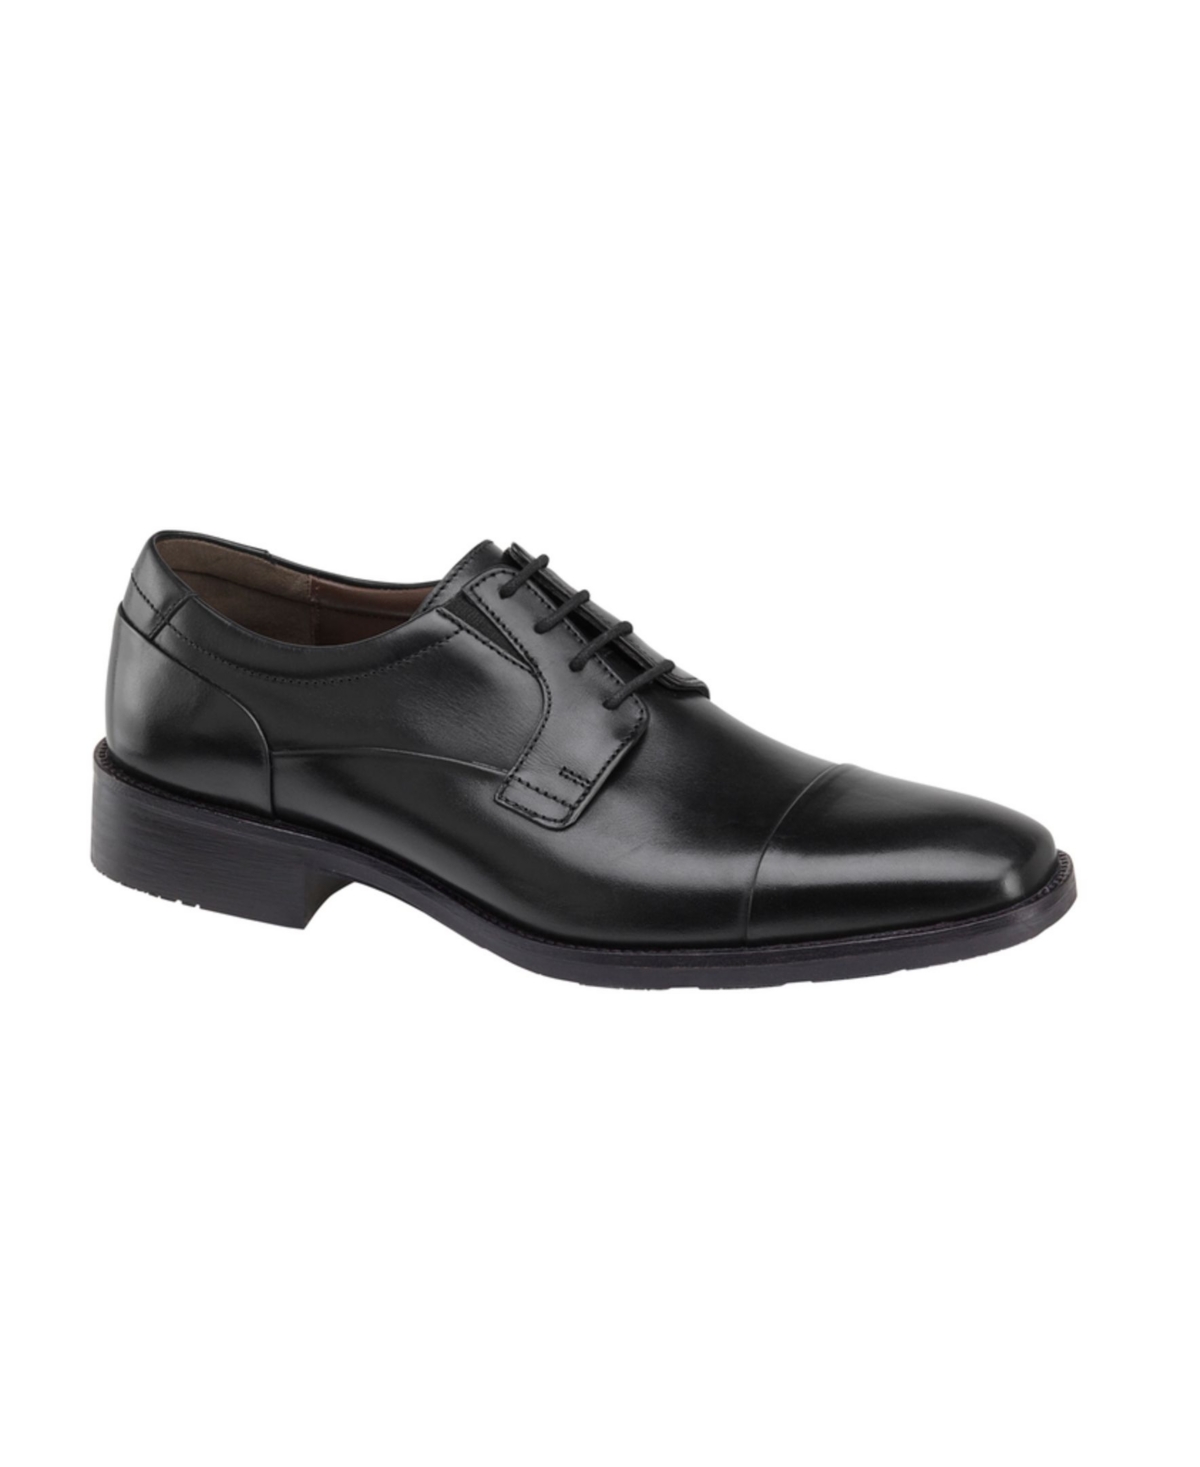 Men's Lancaster Cap Toe Shoes - Black